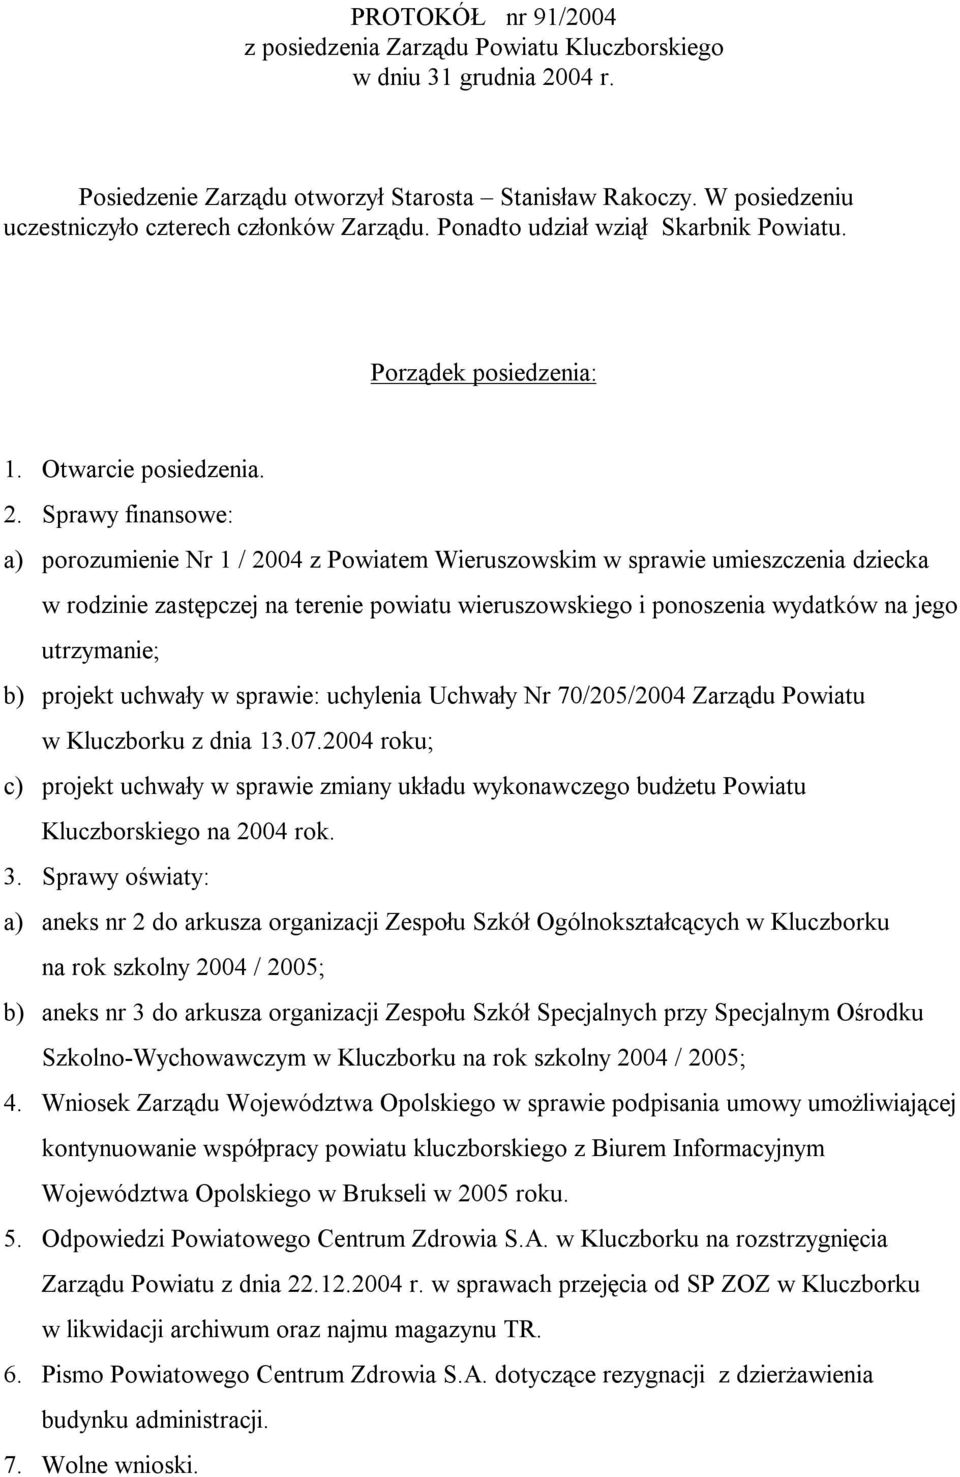 Sprawy finansowe: a) porozumienie Nr 1 / 2004 z Powiatem Wieruszowskim w sprawie umieszczenia dziecka w rodzinie zastępczej na terenie powiatu wieruszowskiego i ponoszenia wydatków na jego